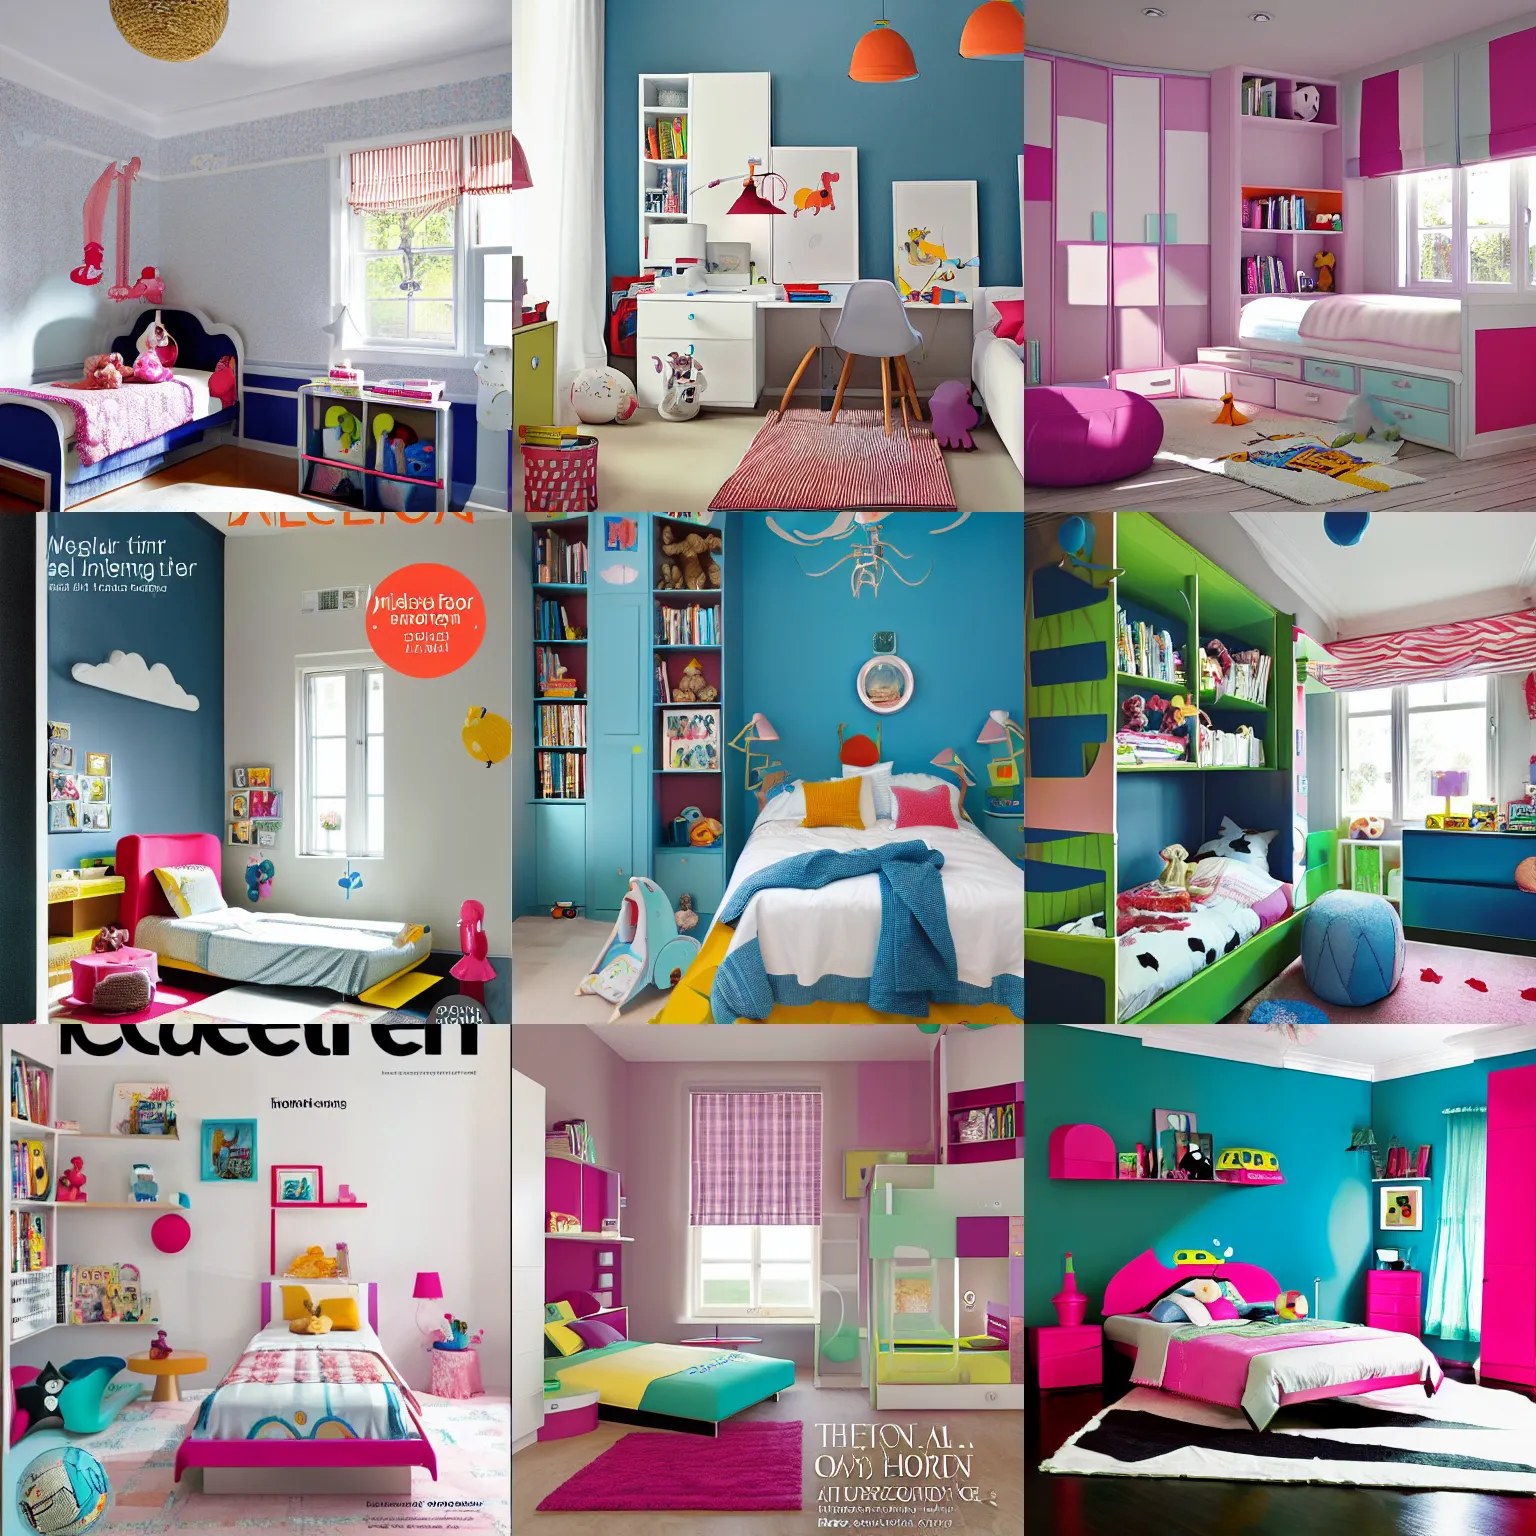 Prompt: children bedroom design interiorism magazine cover